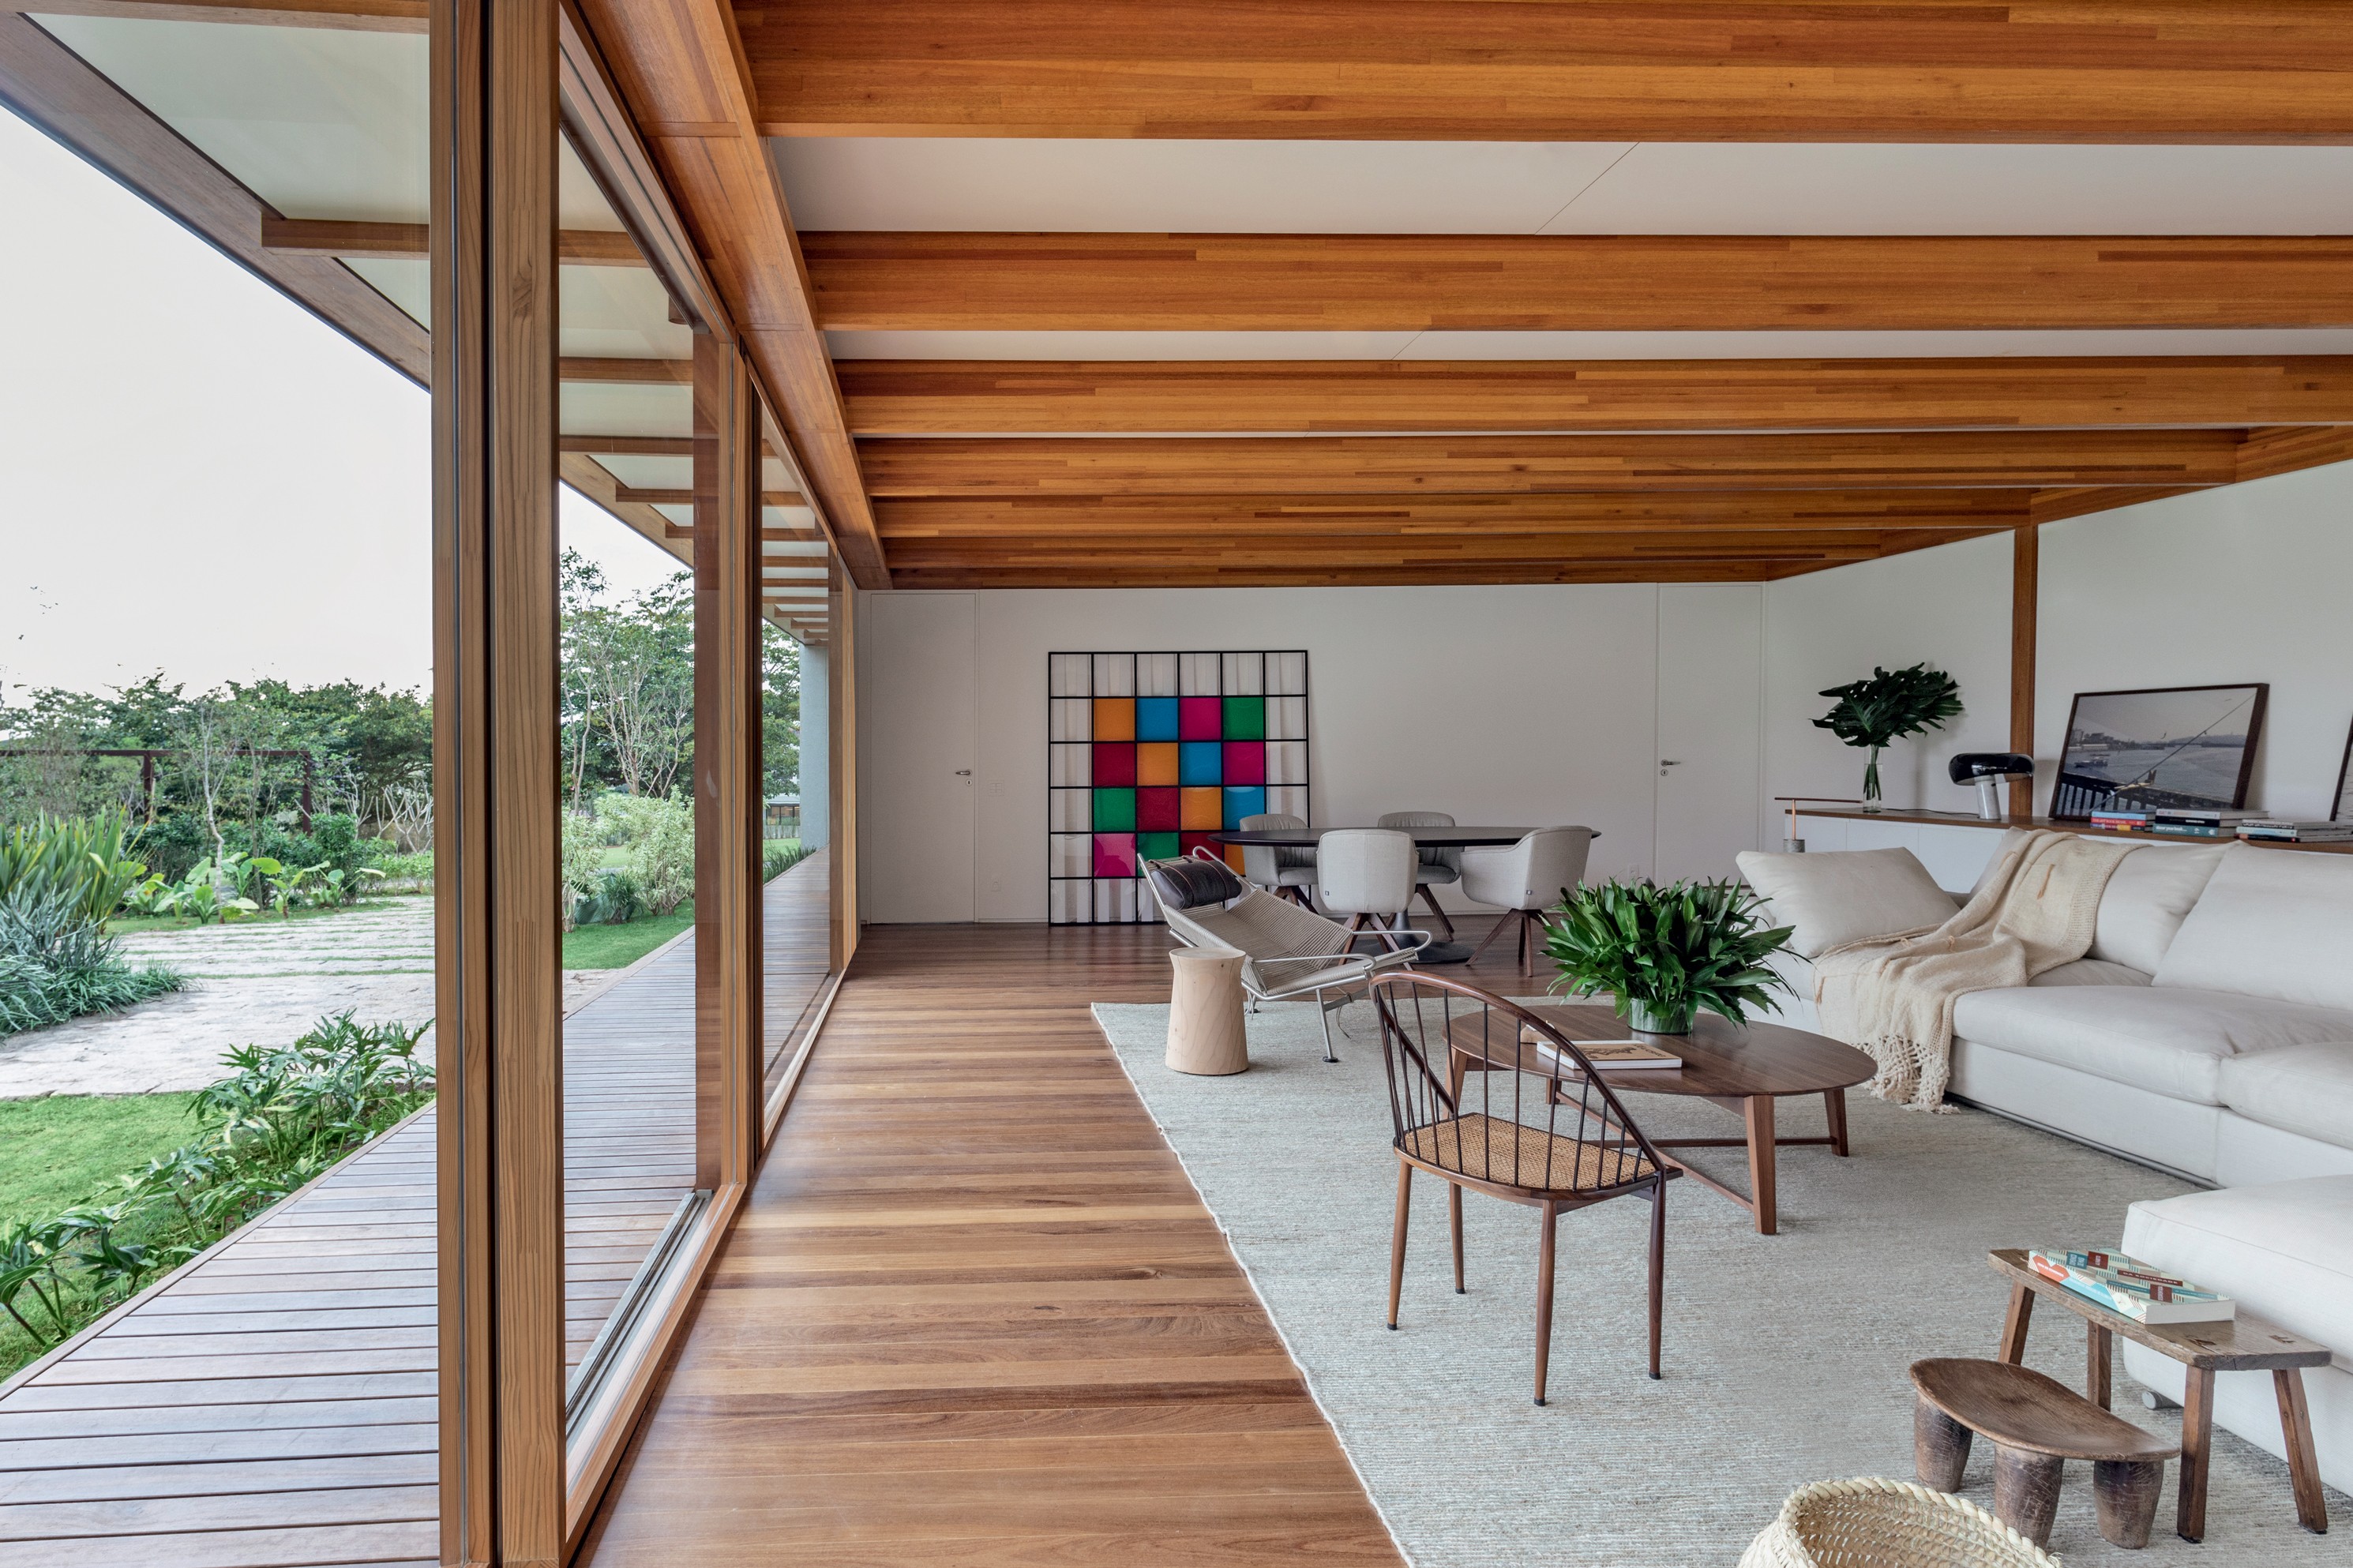 Casa de 500 m² é feita de madeira laminada colada e steel frame (Foto: Ruy Teixeira/Divulgação)